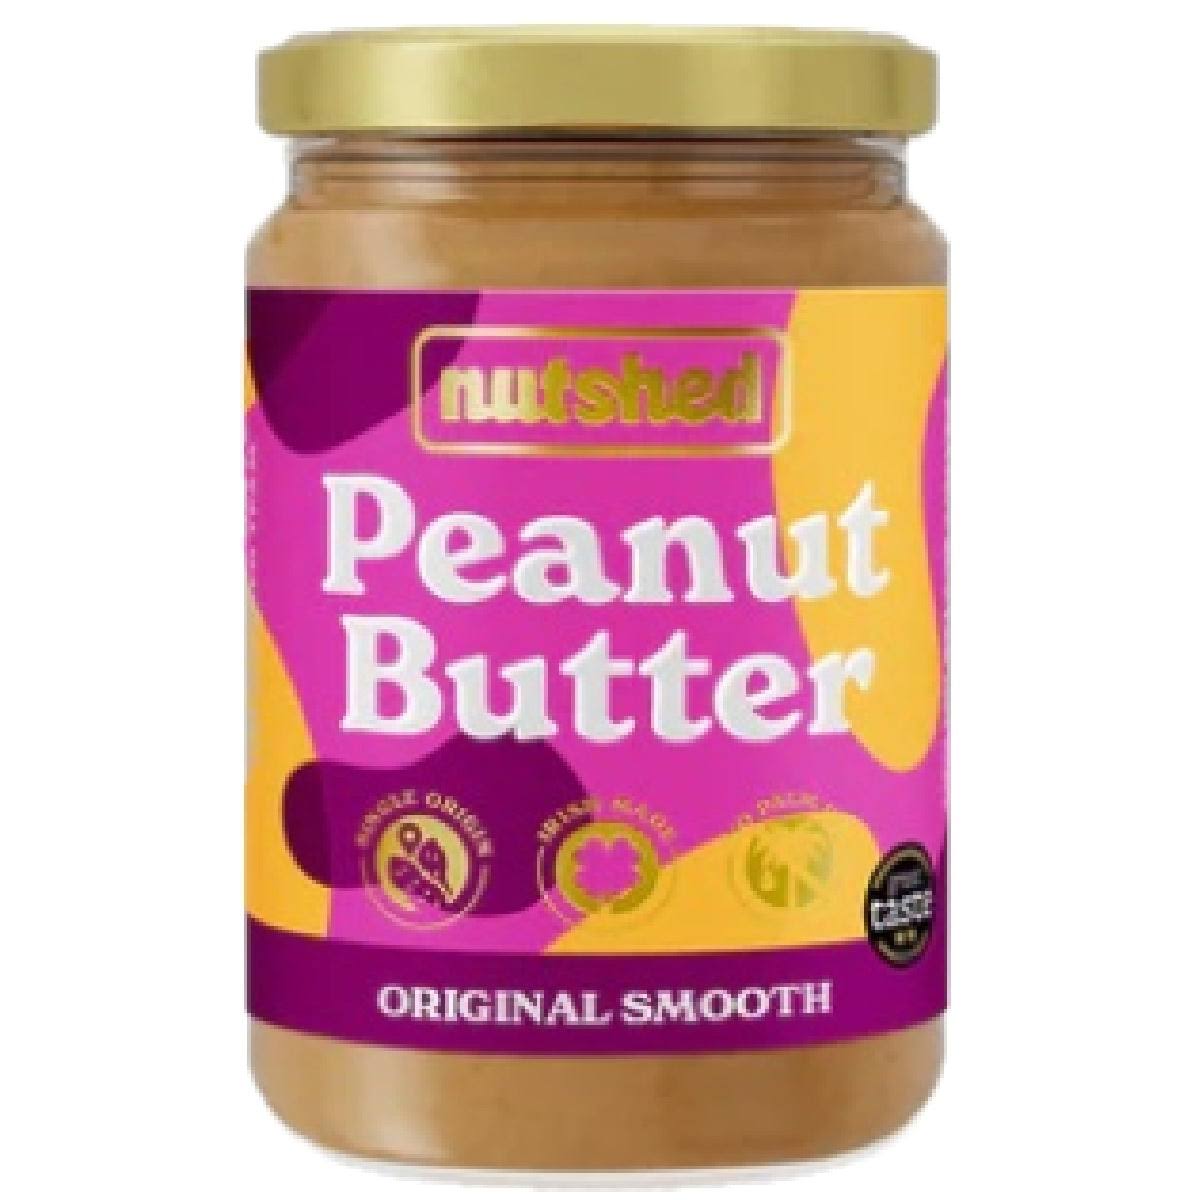 Nutshed Original Peanut Butter